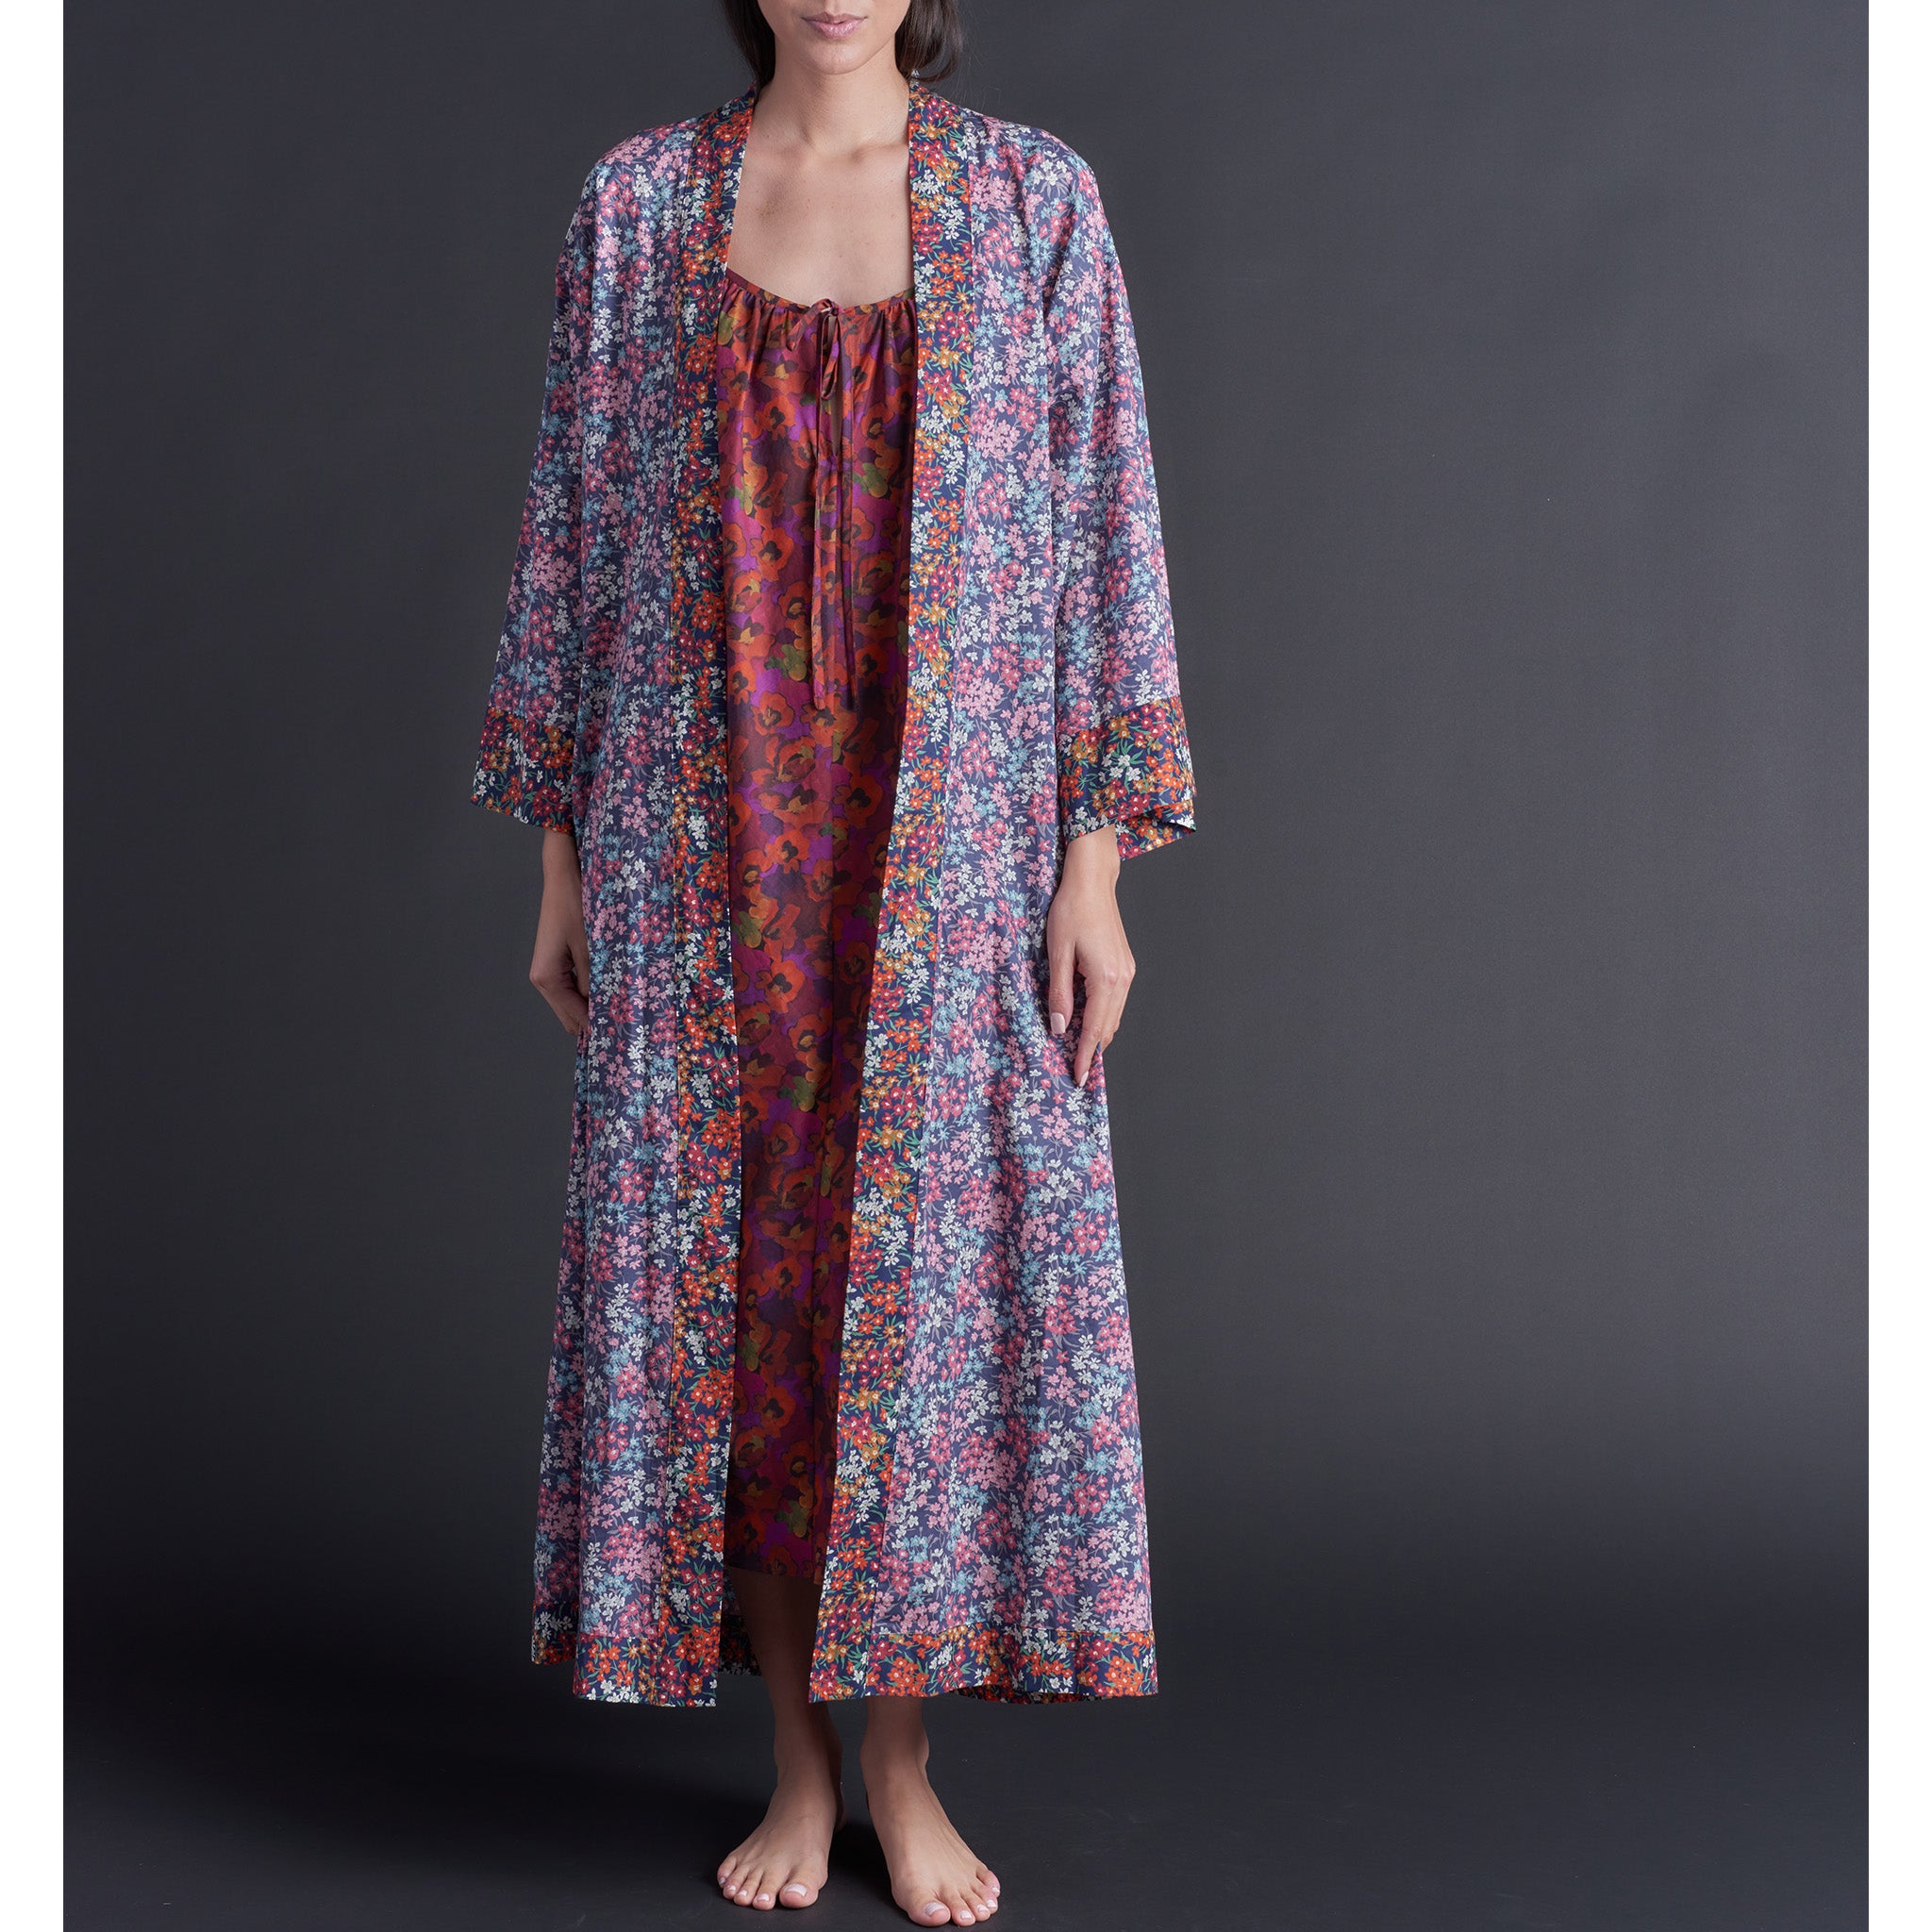 Asteria Kimono Robe in Sea Blossom Liberty of London Print Cotton Lawn